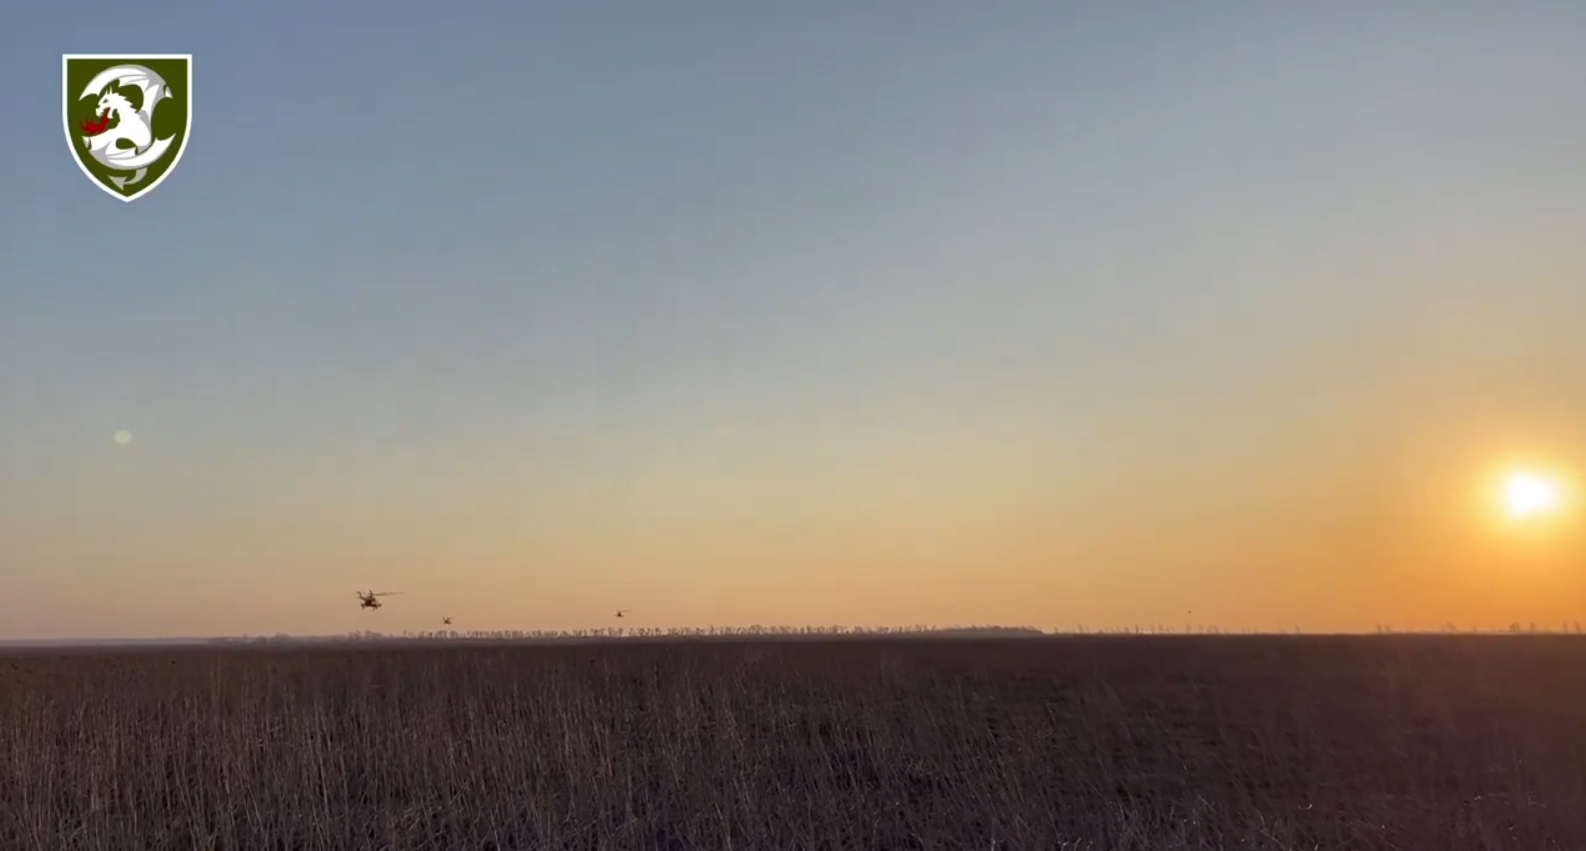 Украинские авиаторы передали привет с неба в солнечный боевой день: вдохновляющее видео